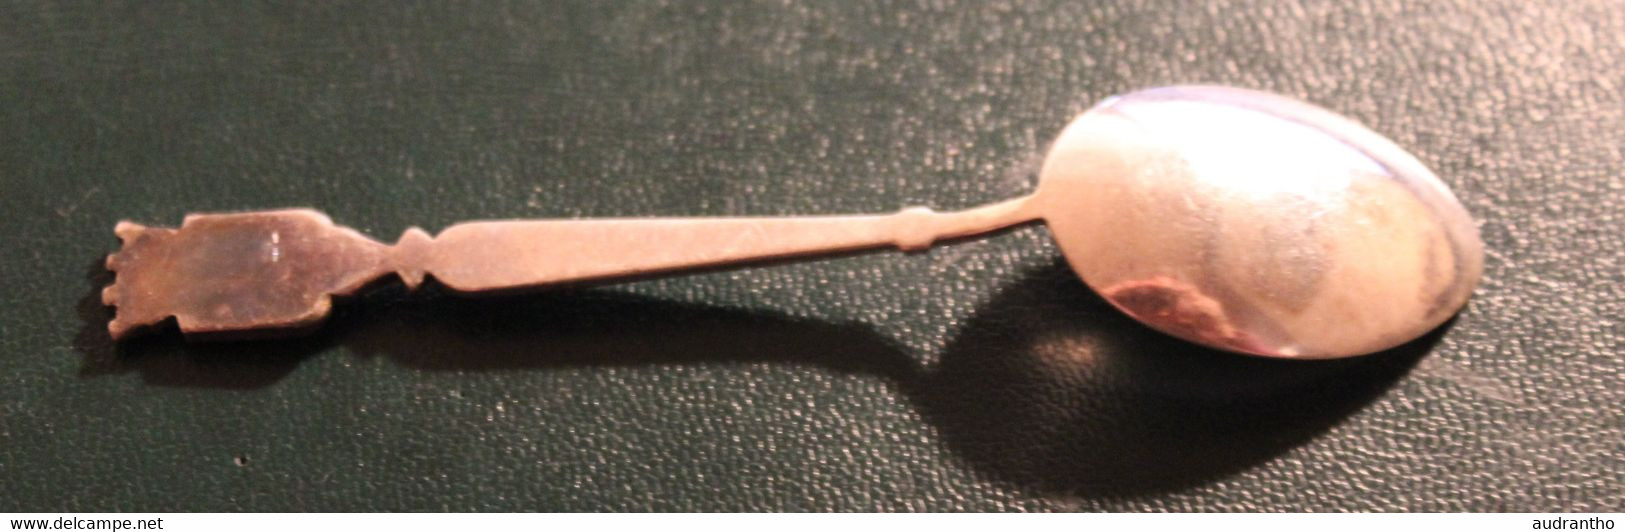 Petite Cuillère En Métal Argenté Augis Nice Blason - Spoons